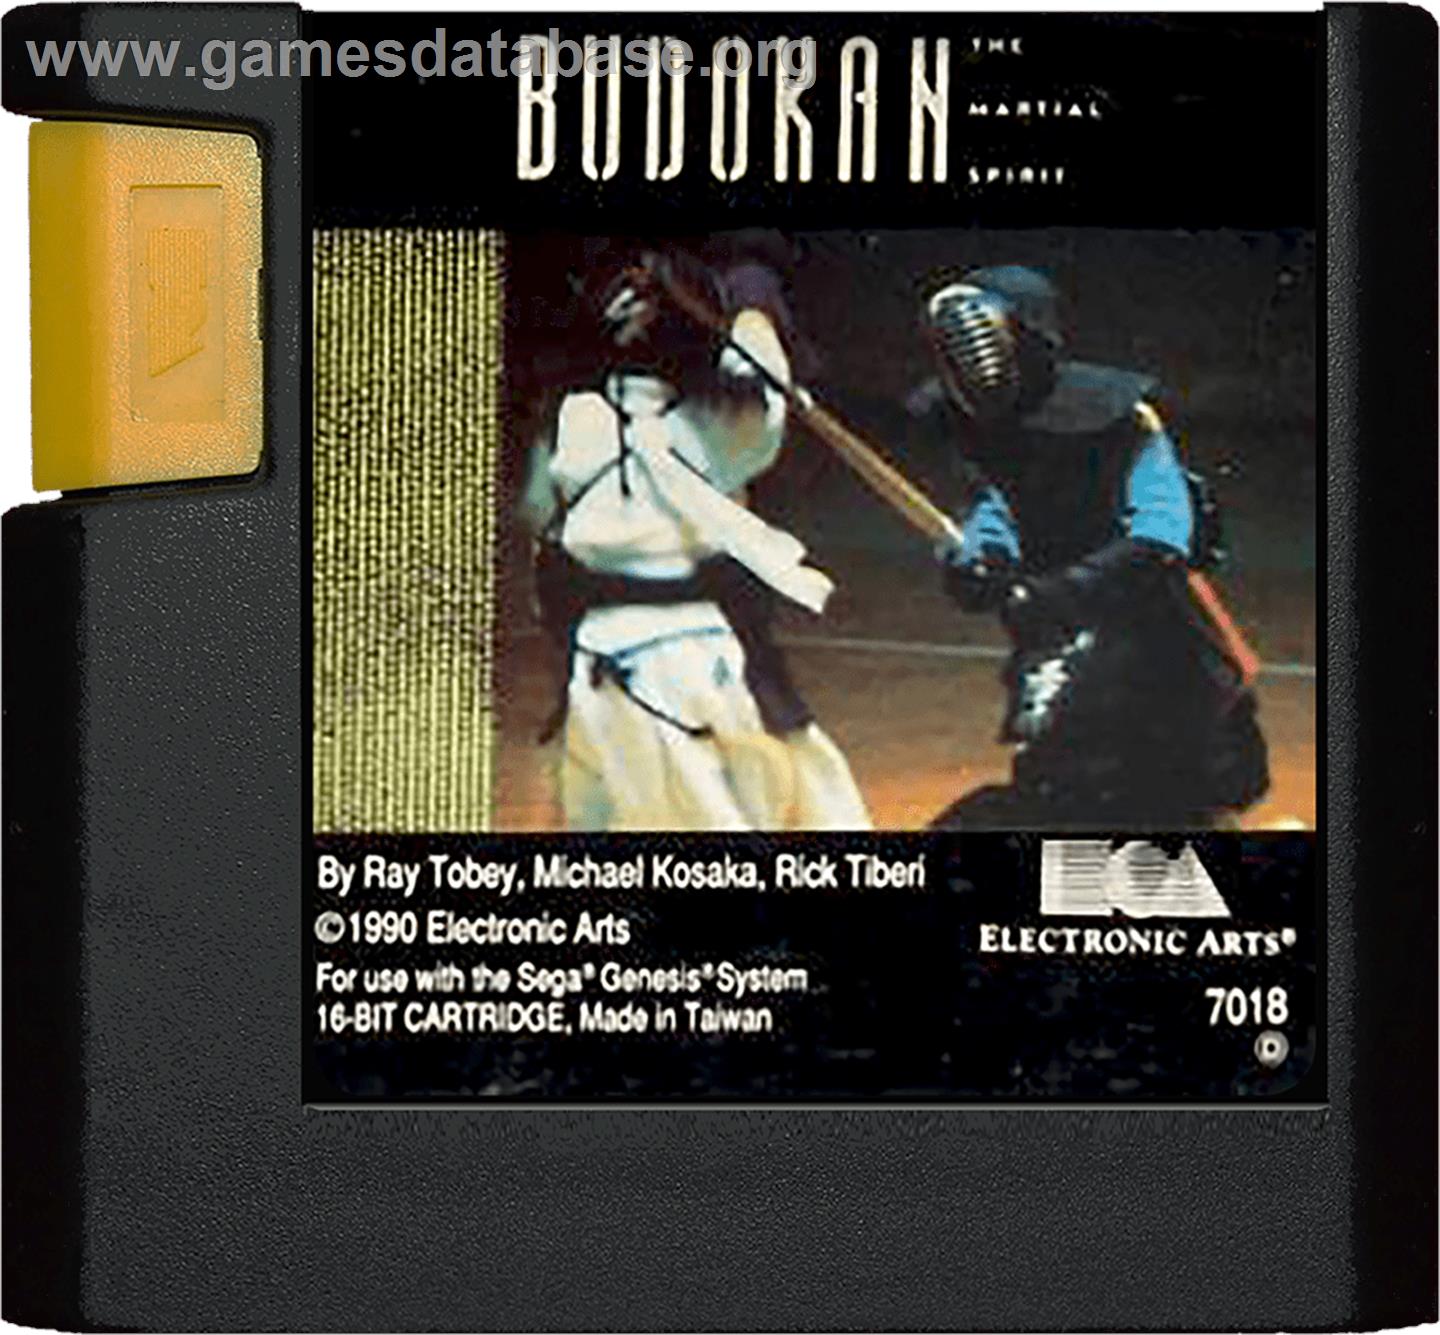 Budokan: The Martial Spirit - Sega Genesis - Artwork - Cartridge